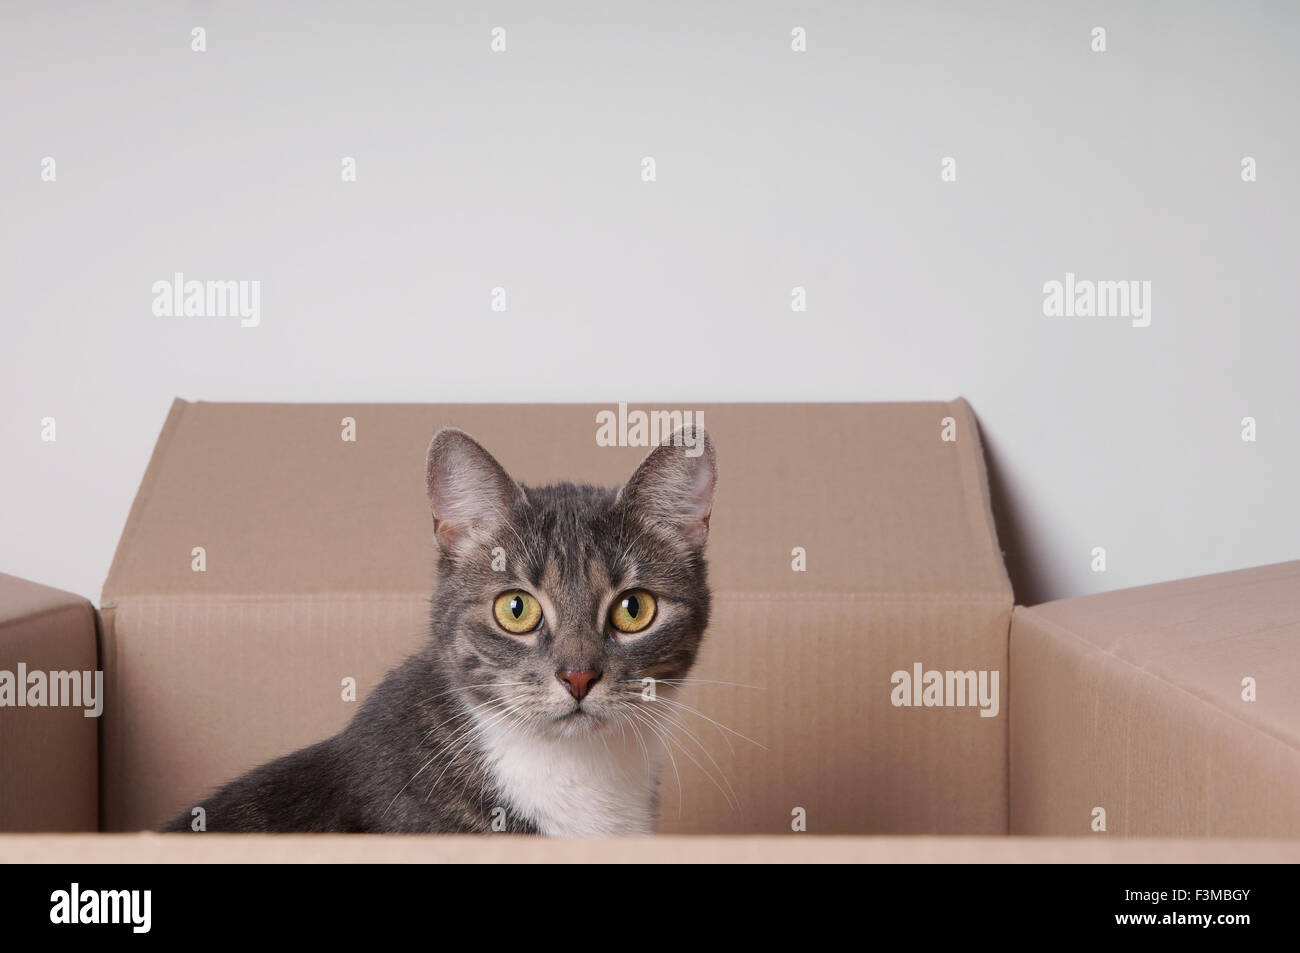 cat in cardboard box Stock Photo